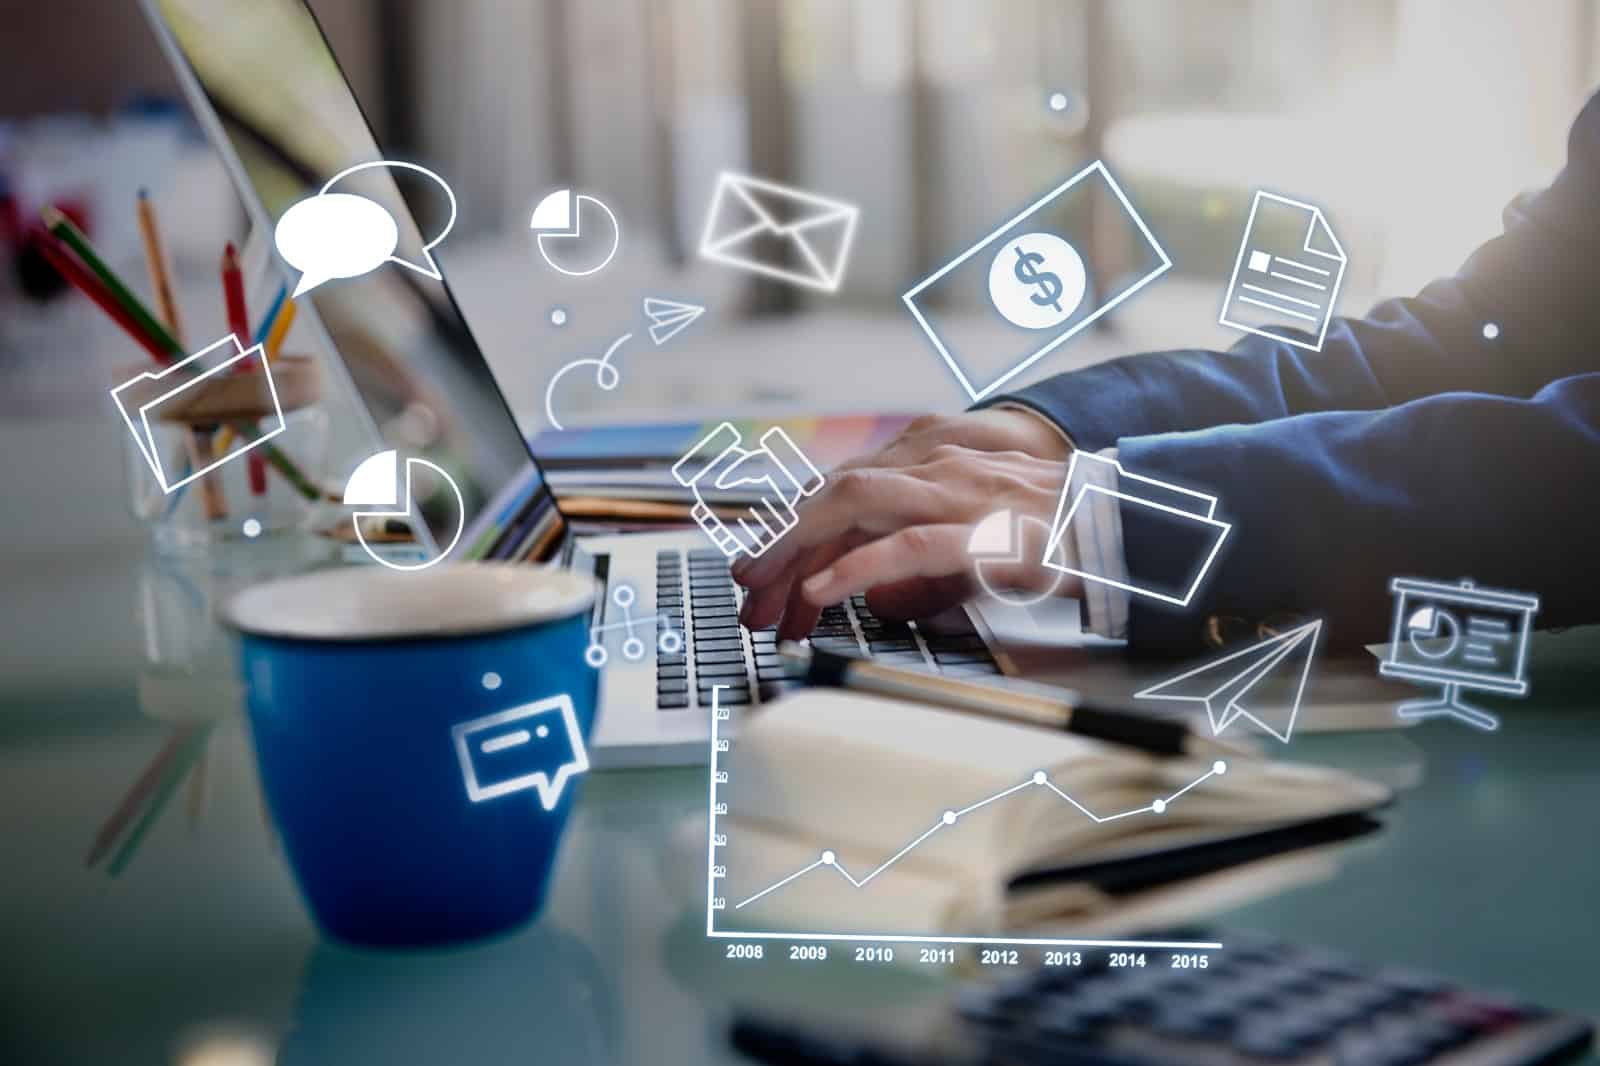 Uma pessoa digitando em um laptop cercada por ícones representativos de comunicação digital e análise de dados, com um copo azul e lápis coloridos ao lado, em um ambiente de escritório